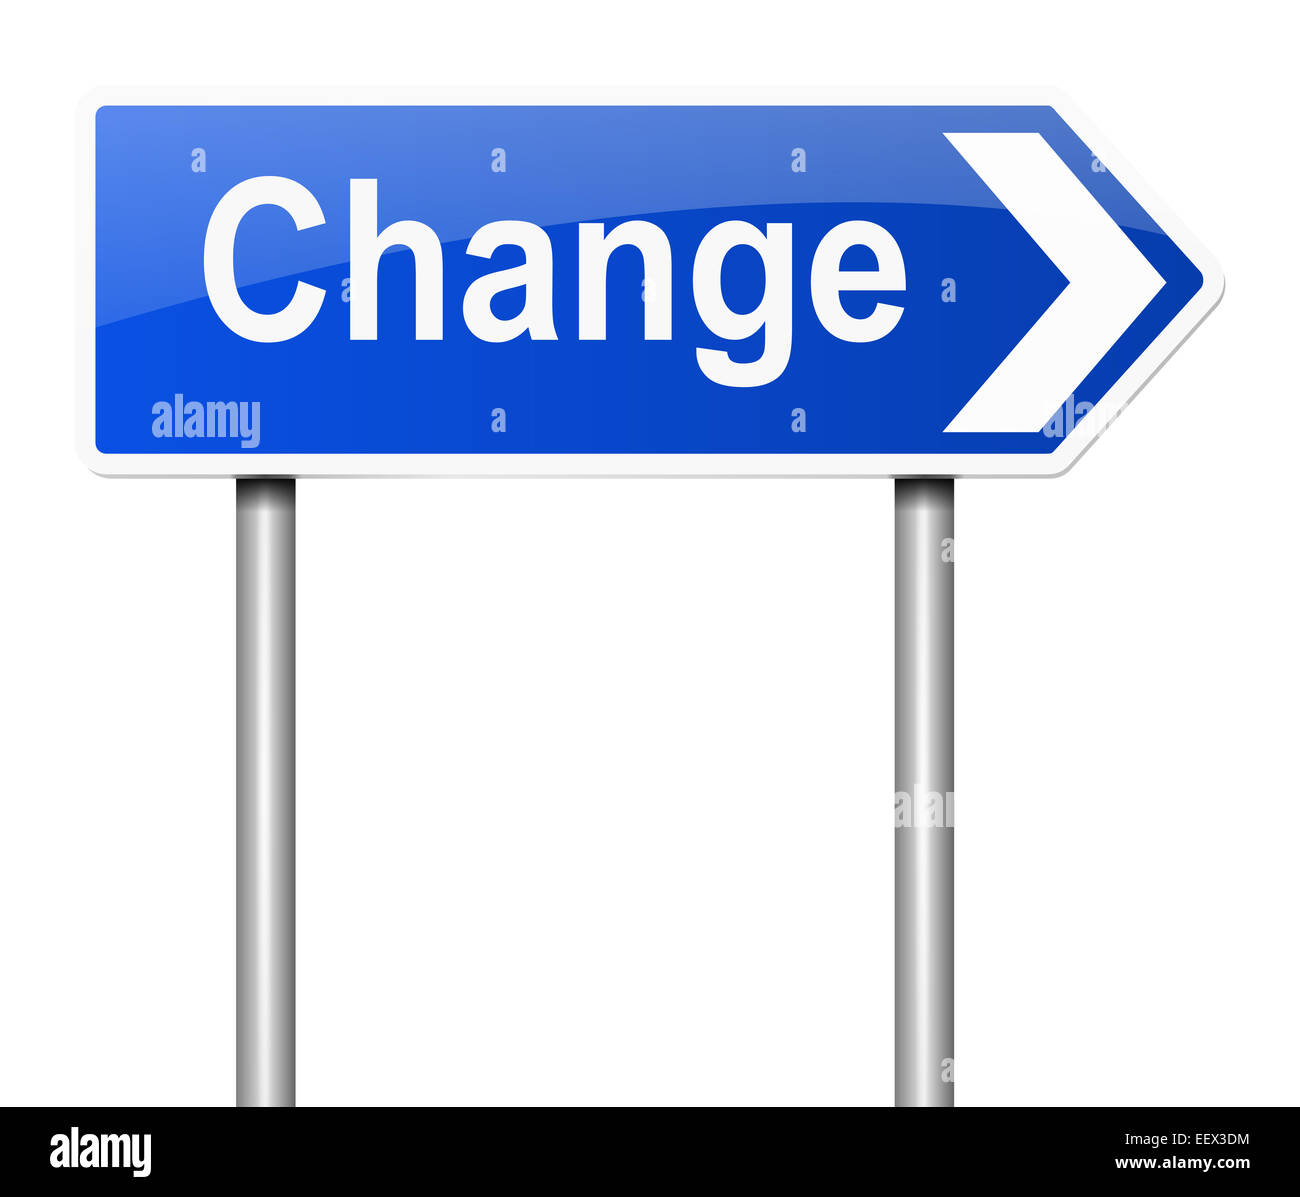 Change concept. Stock Photo